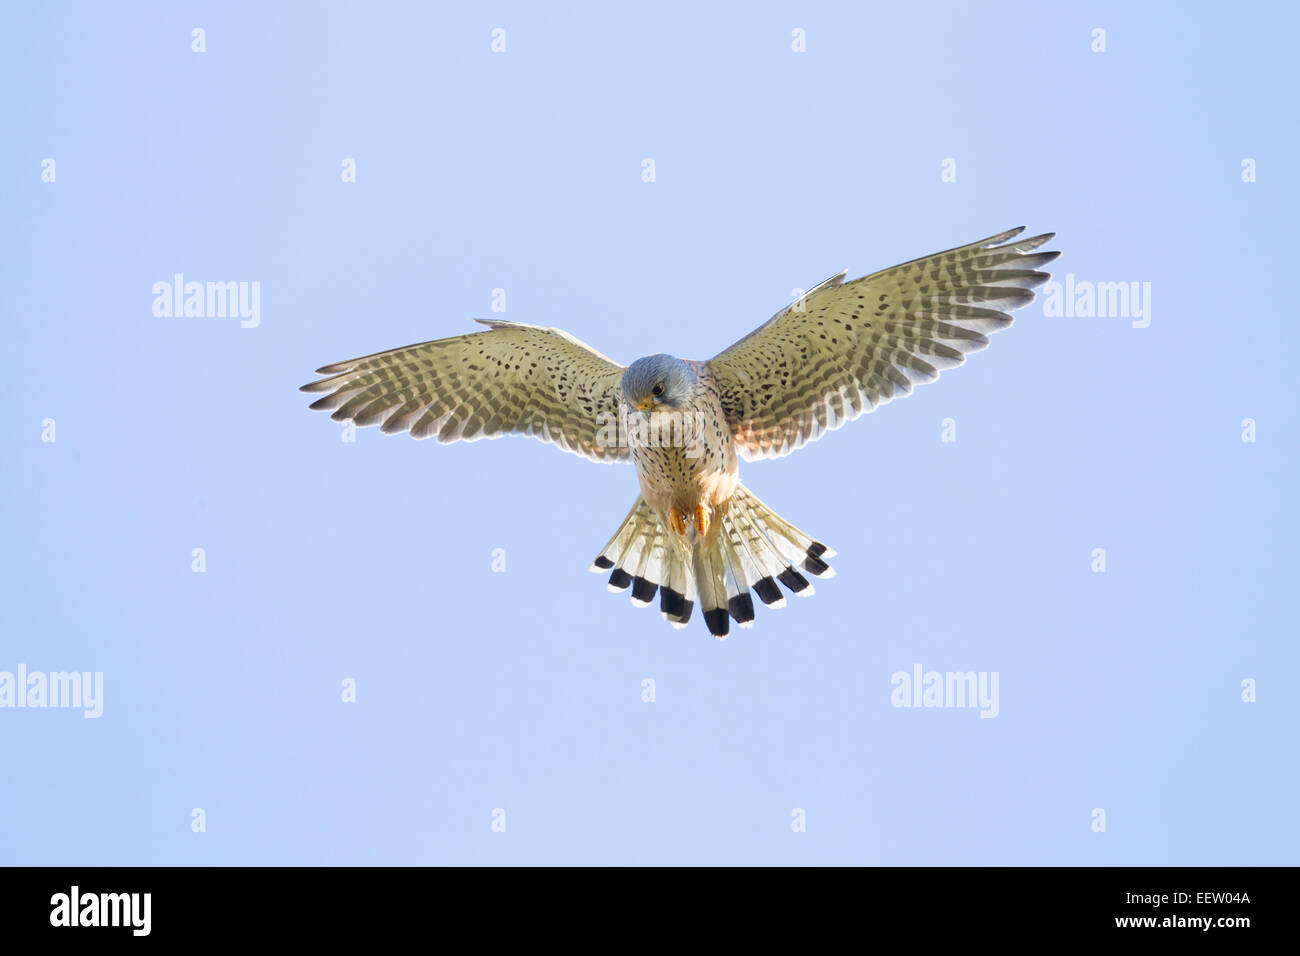 Seul mâle adulte, Faucon crécerelle Falco tinnunculus planant sur fond de ciel bleu avec des ailes et queue outstretched Banque D'Images